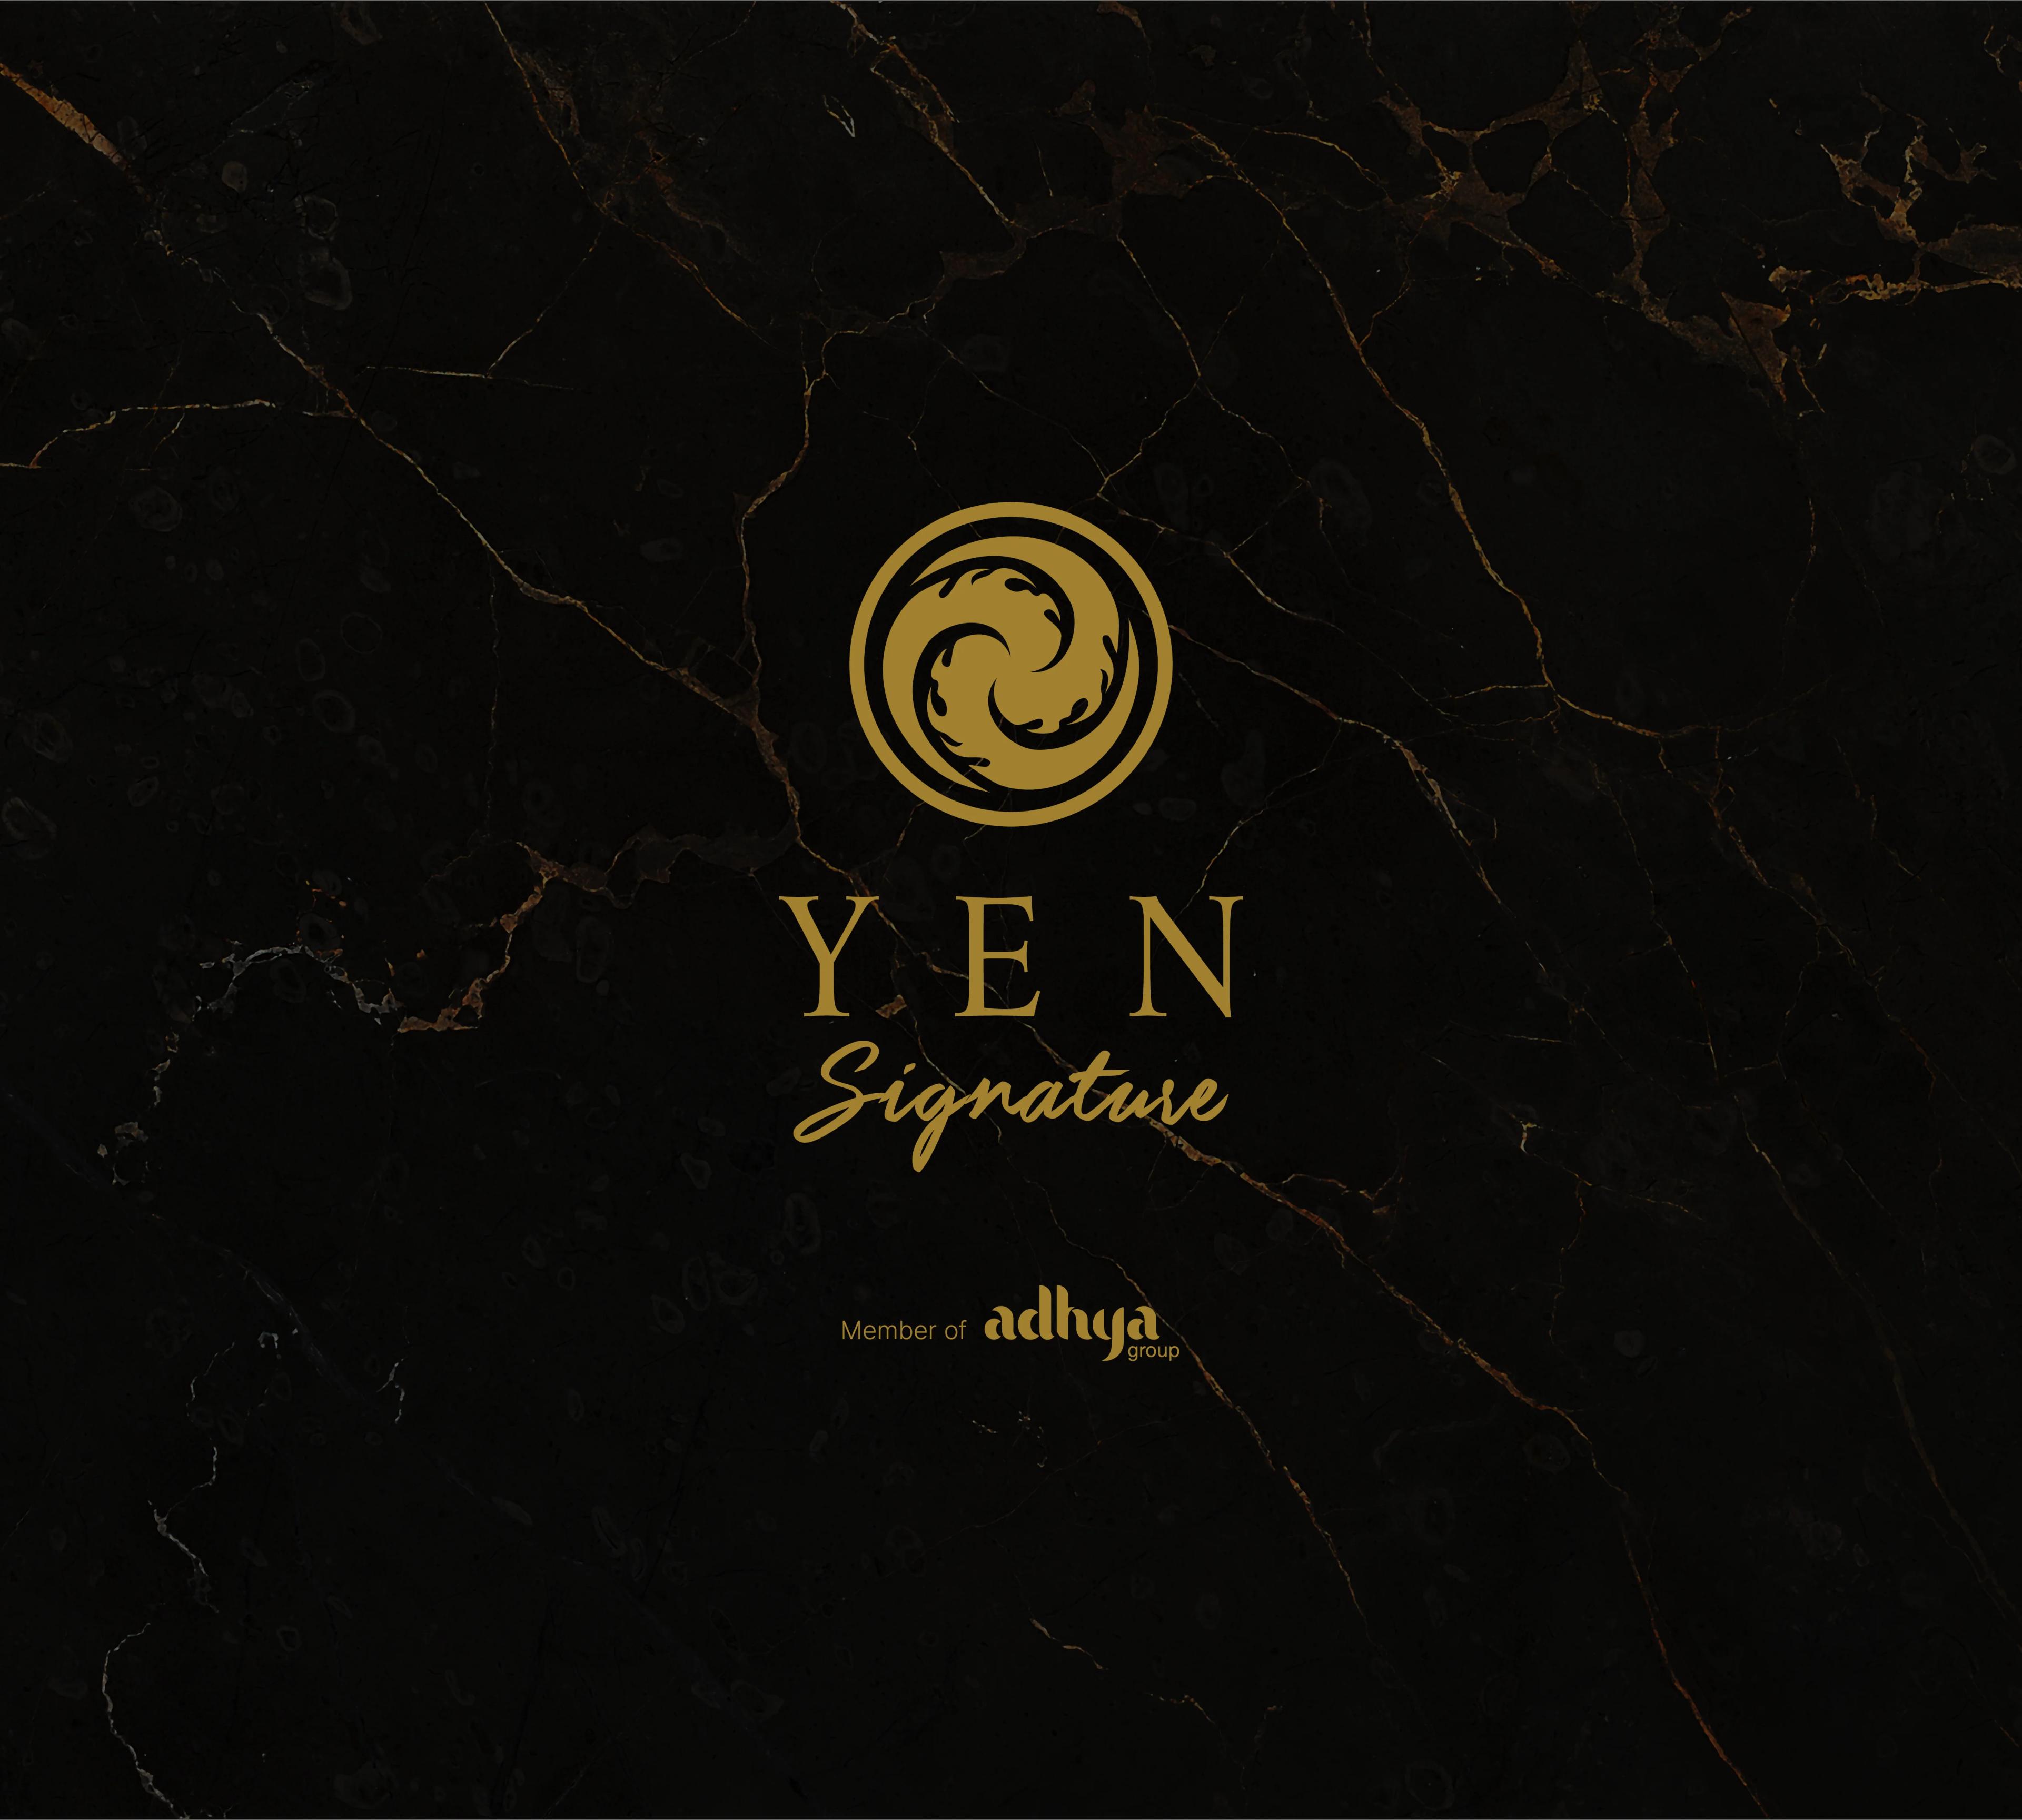 Yen Signature